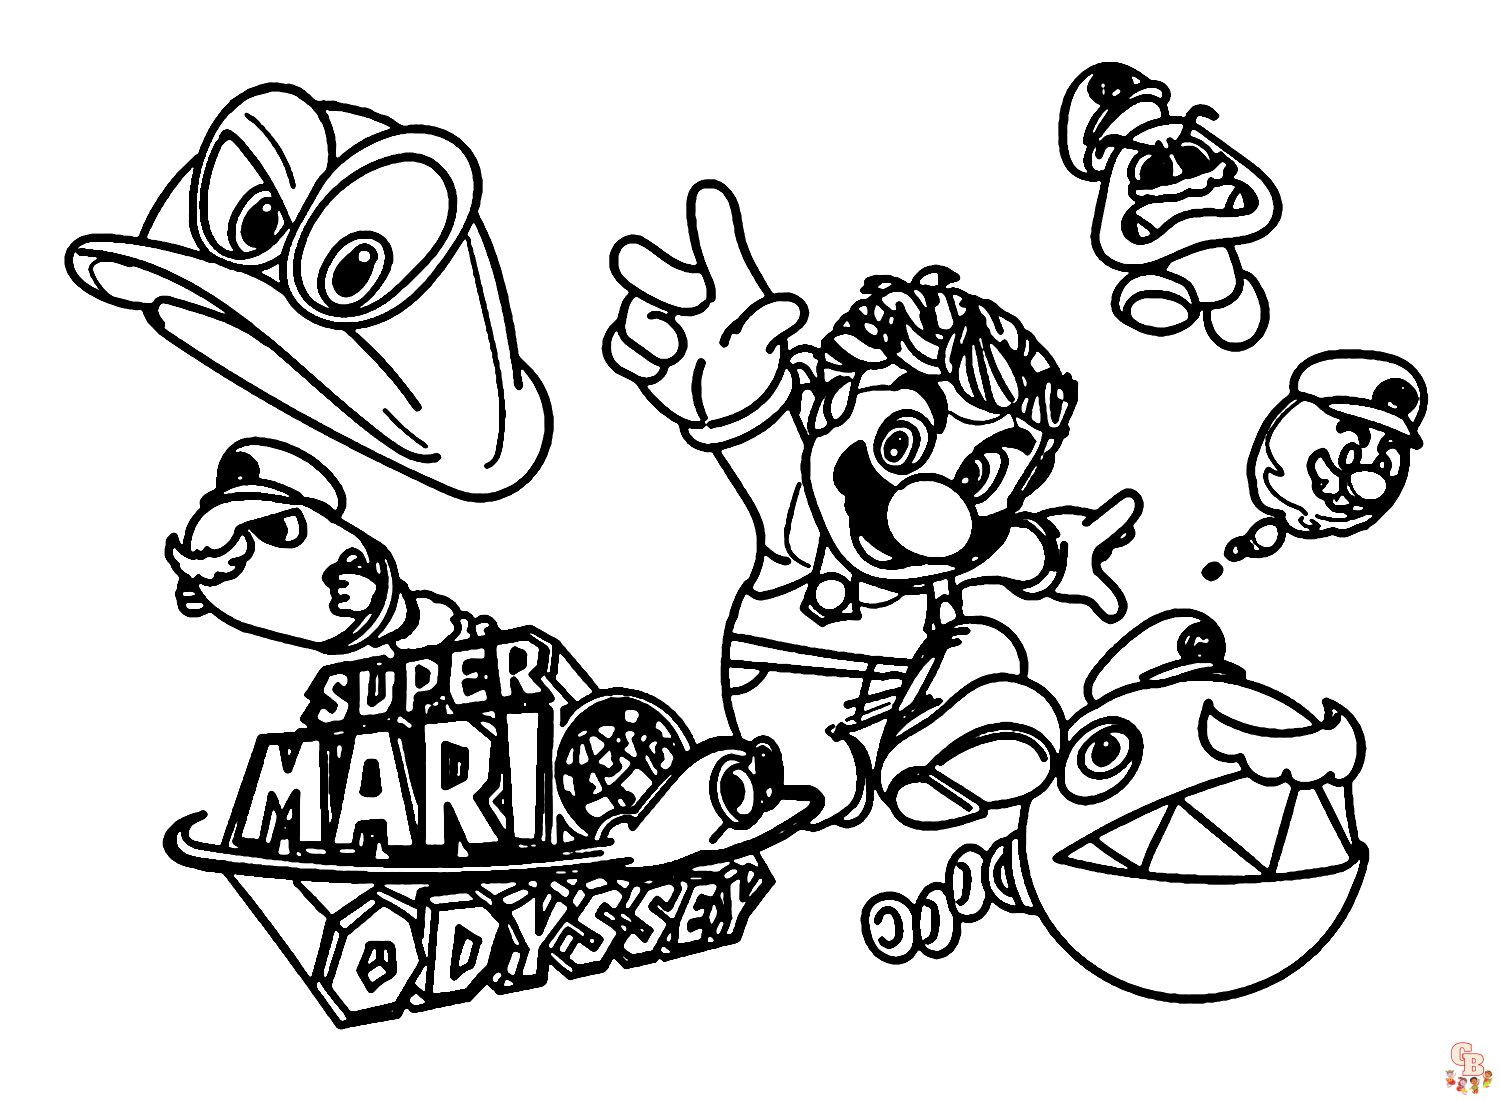 Super Mario Odyssey Pictures